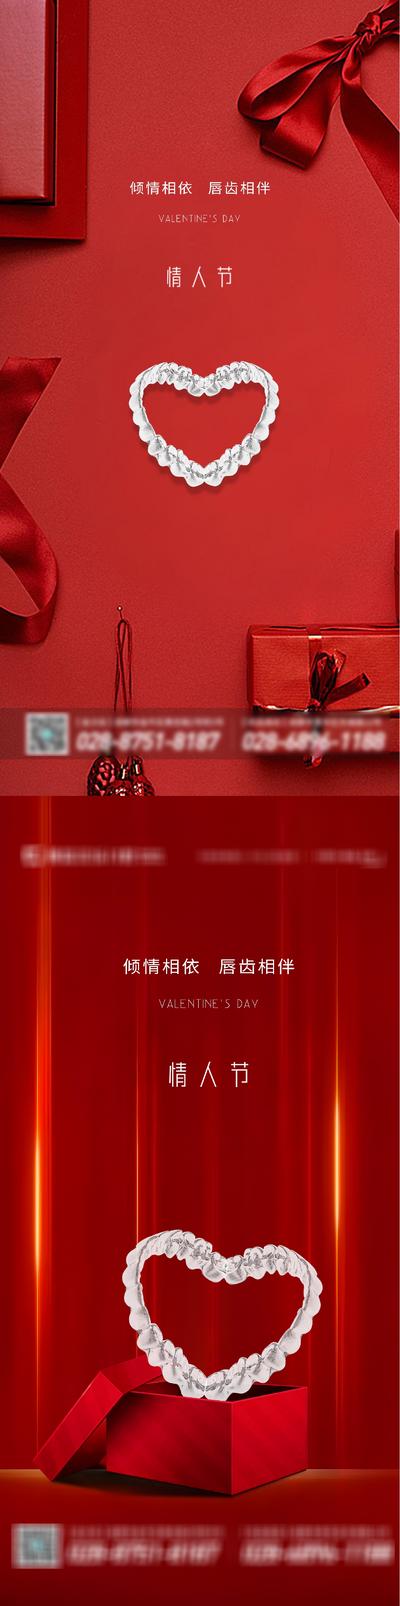 南门网 广告 海报 节日 情人节 花 玫瑰